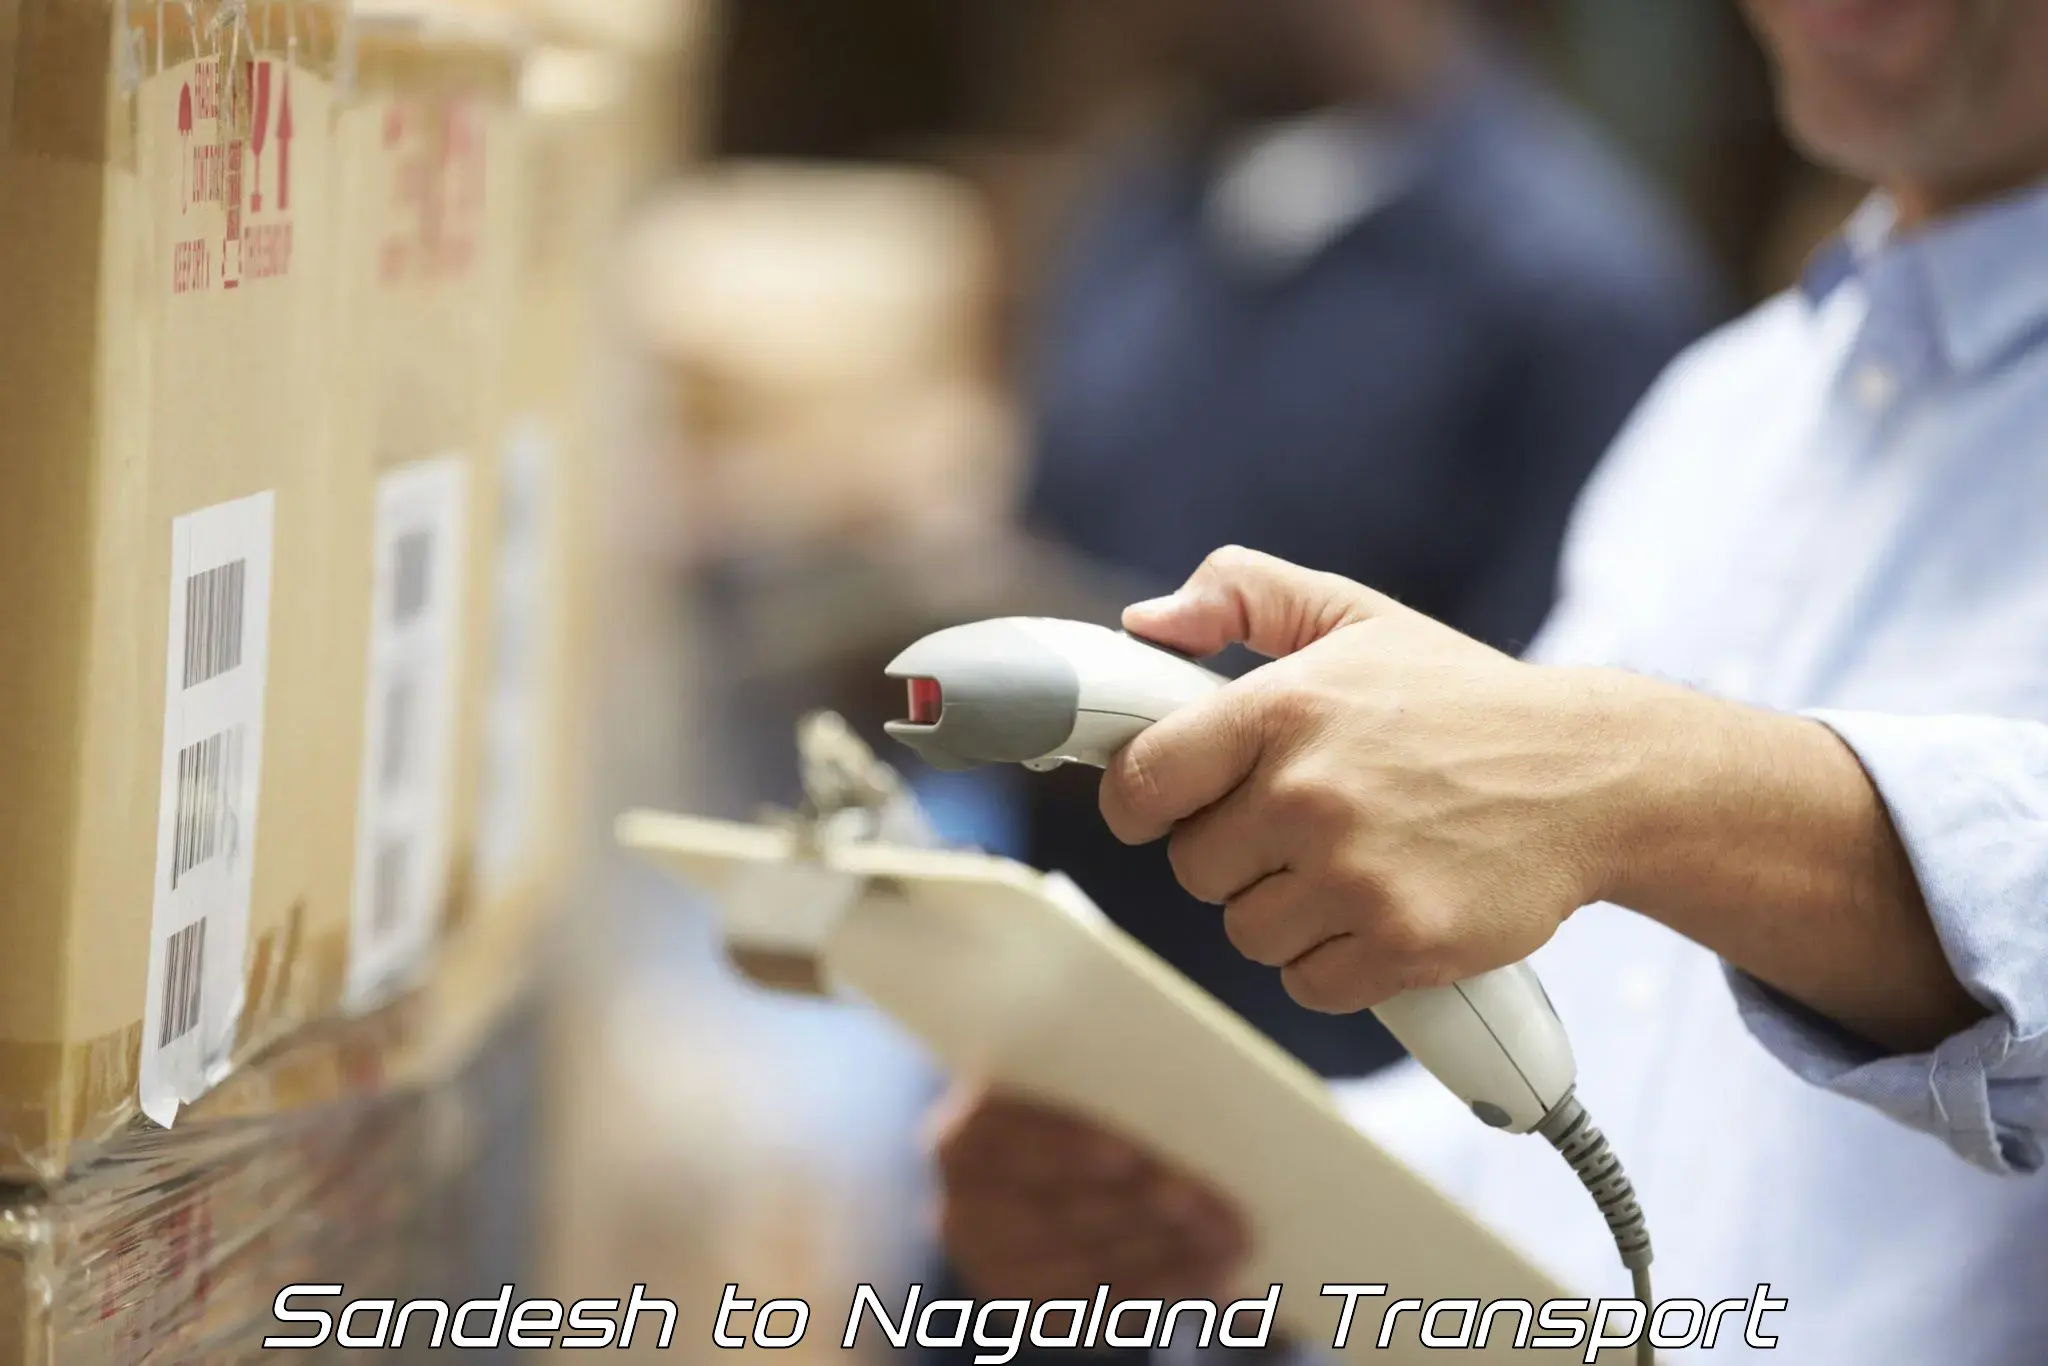 Online transport service Sandesh to Nagaland